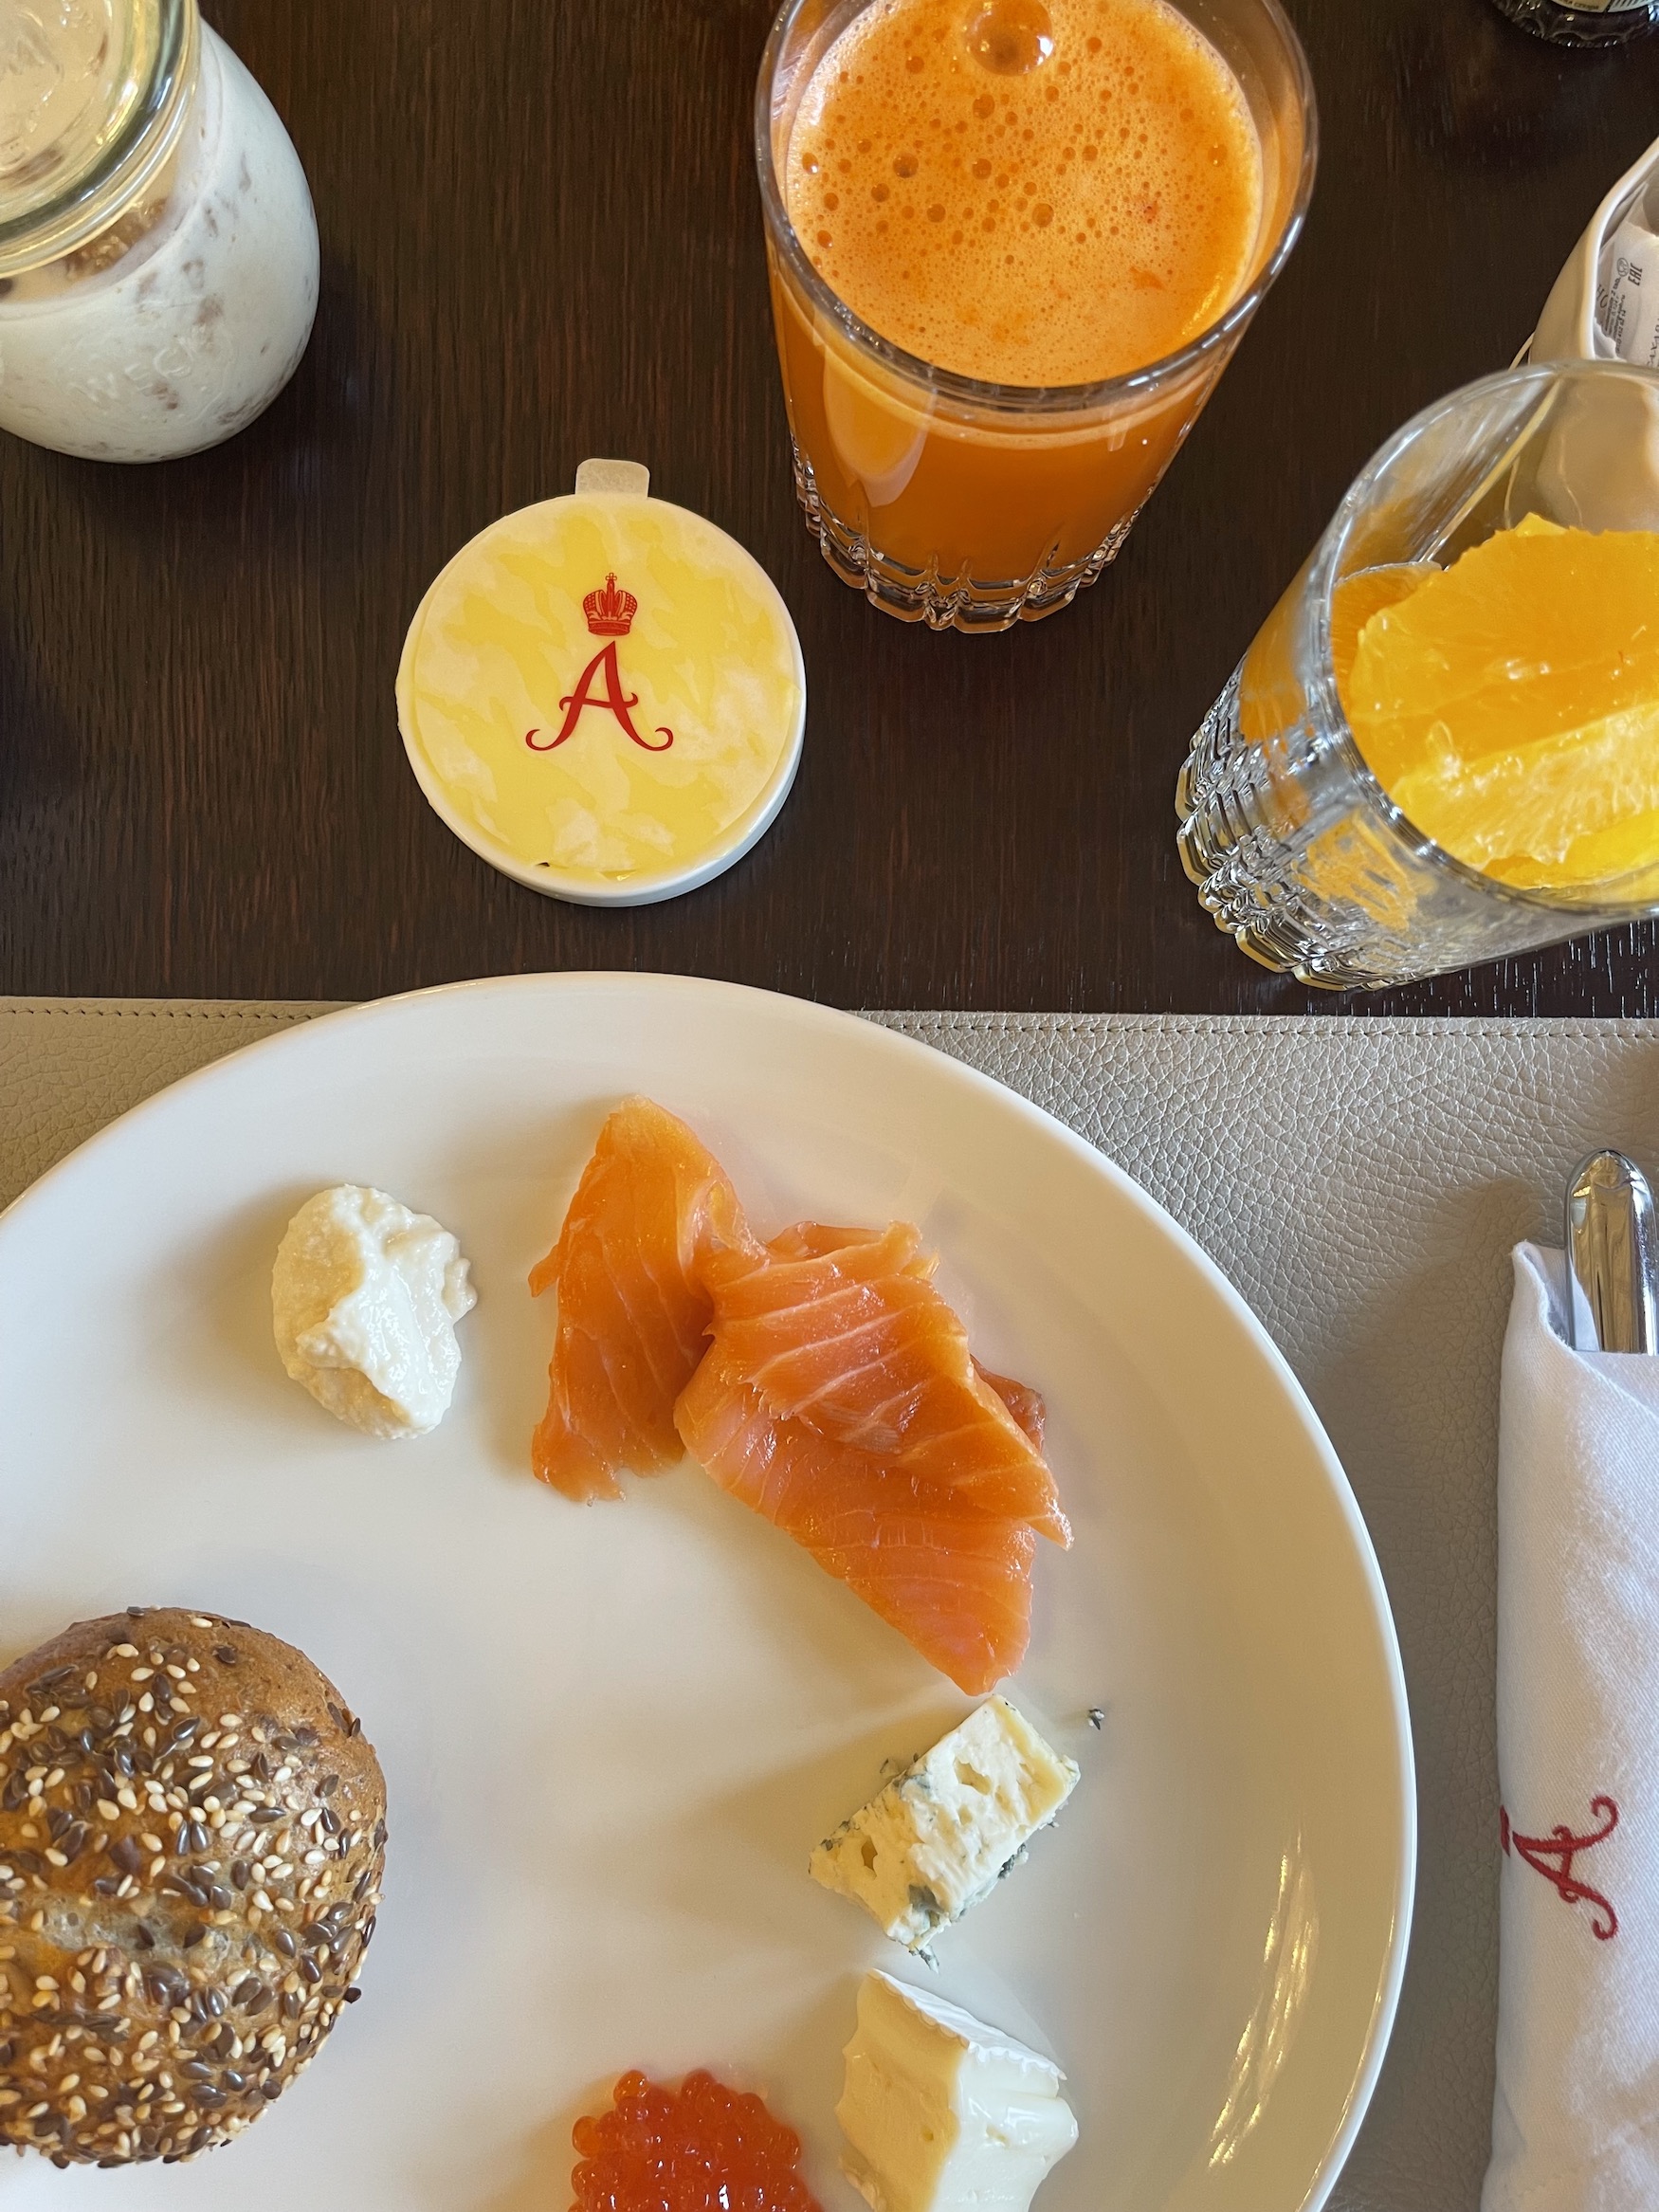 Lachs, Kaviar, Orangensaft und Brötchen auf einem Tisch beim Hotelfrühstück